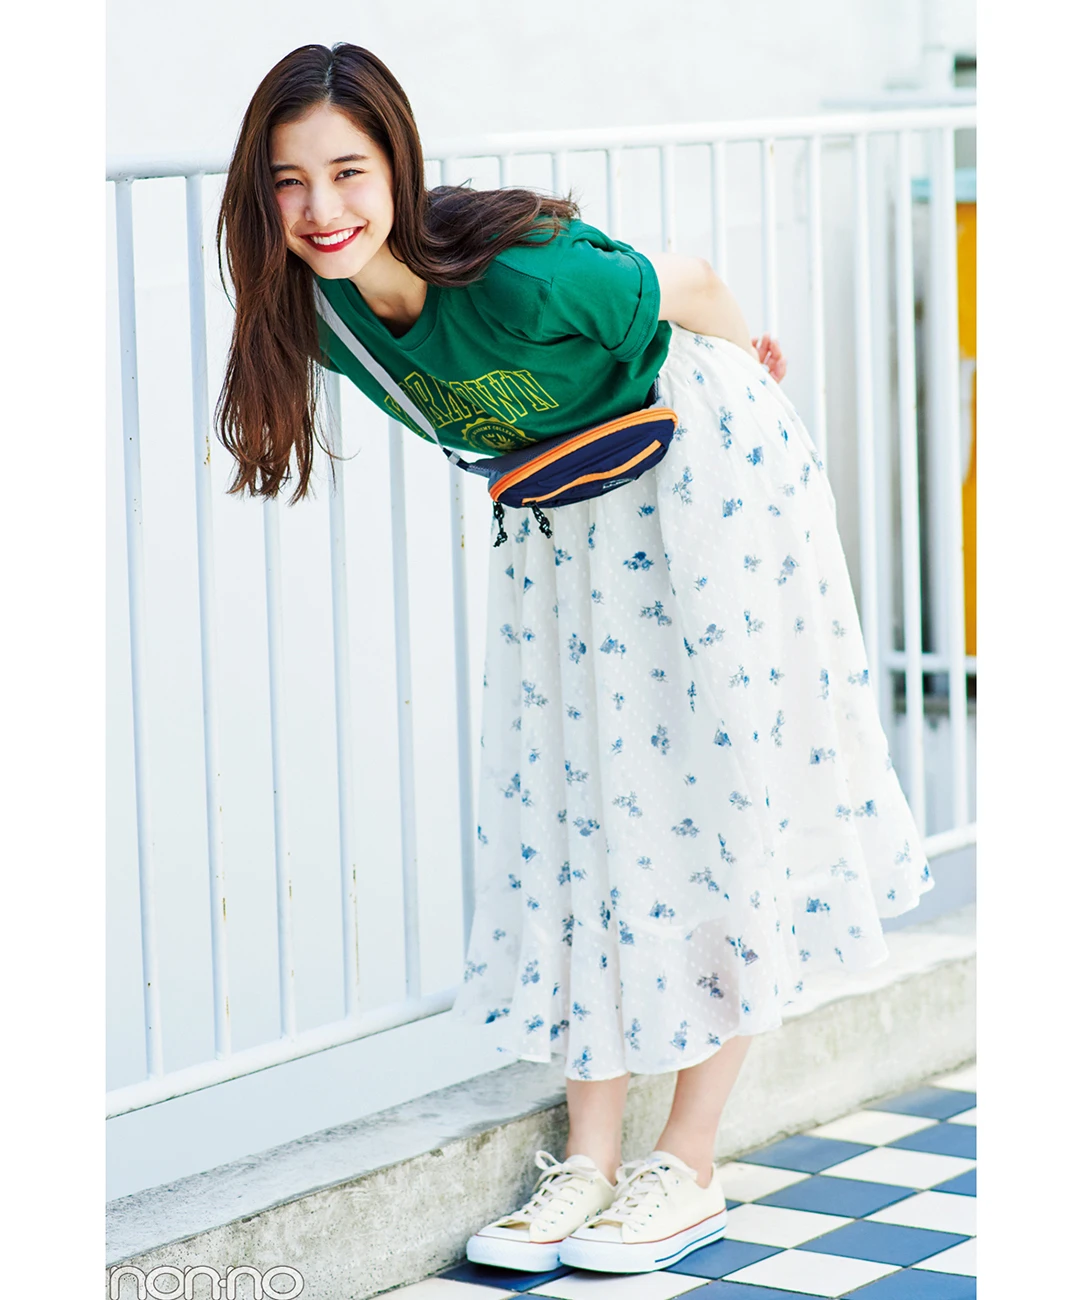 【夏のロングスカートコーデ】新木優子の、フェミスカートでギャップを狙うスポカジコーデ♡